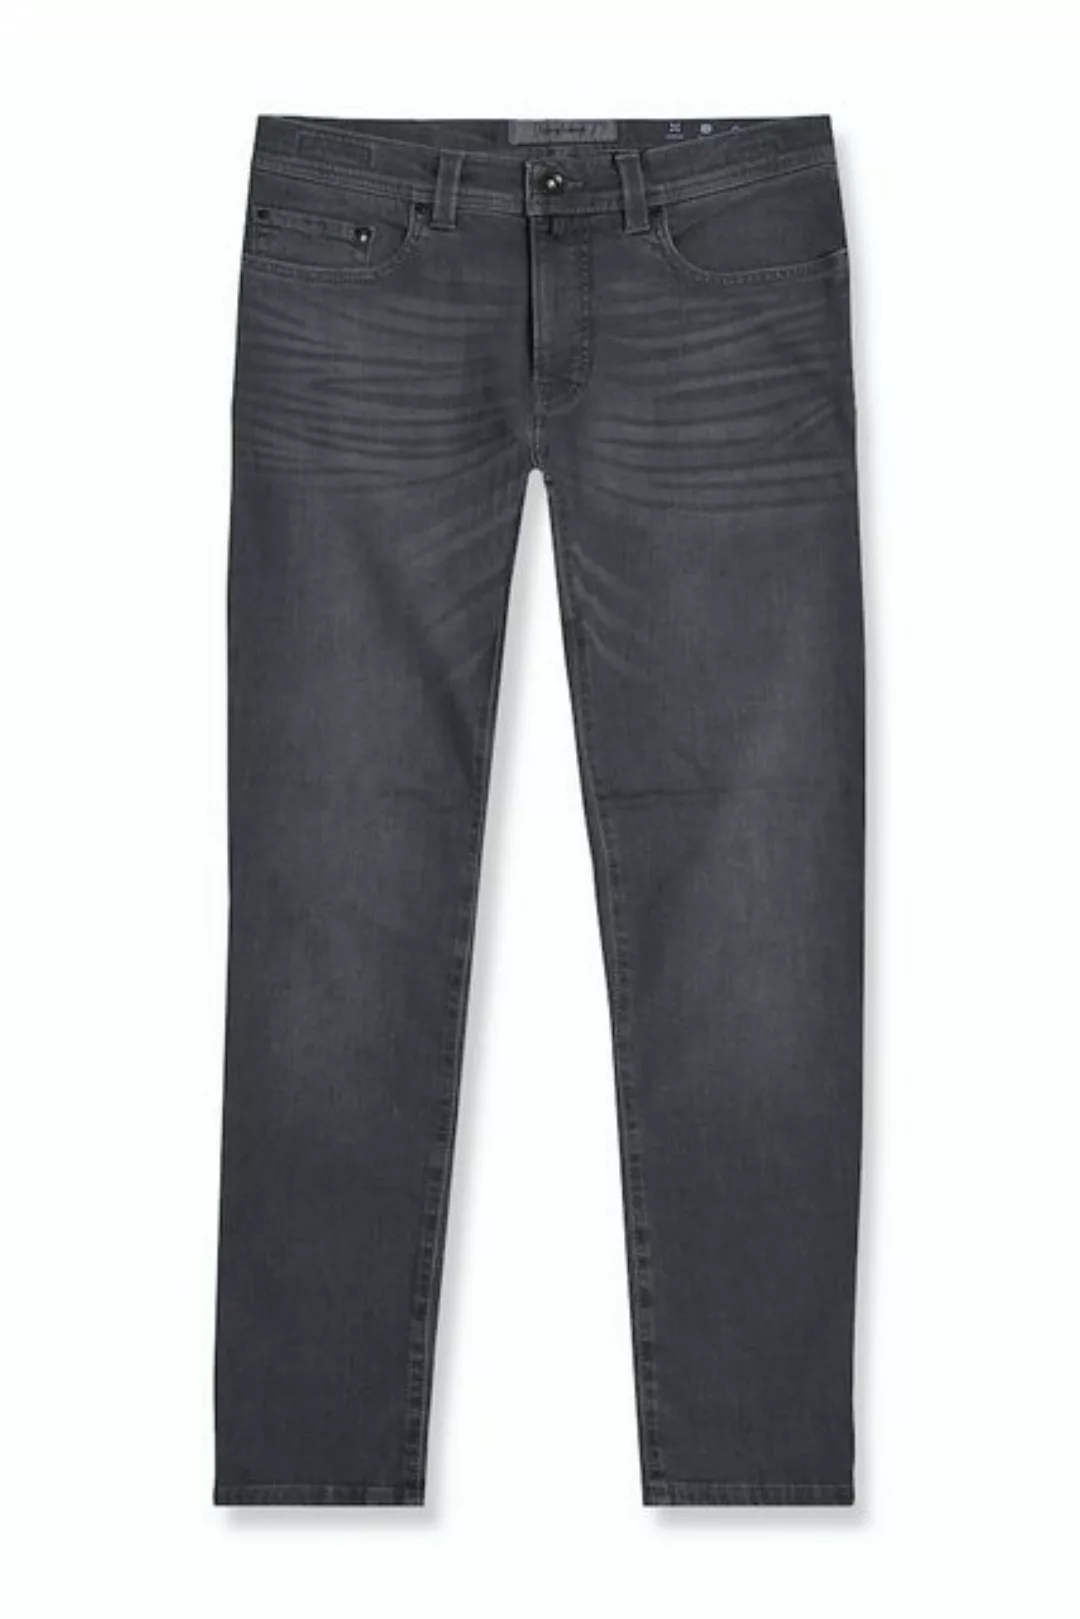 Pierre Cardin Bequeme Jeans Pierre Cardin / He.Jeans / PC-Lyon günstig online kaufen